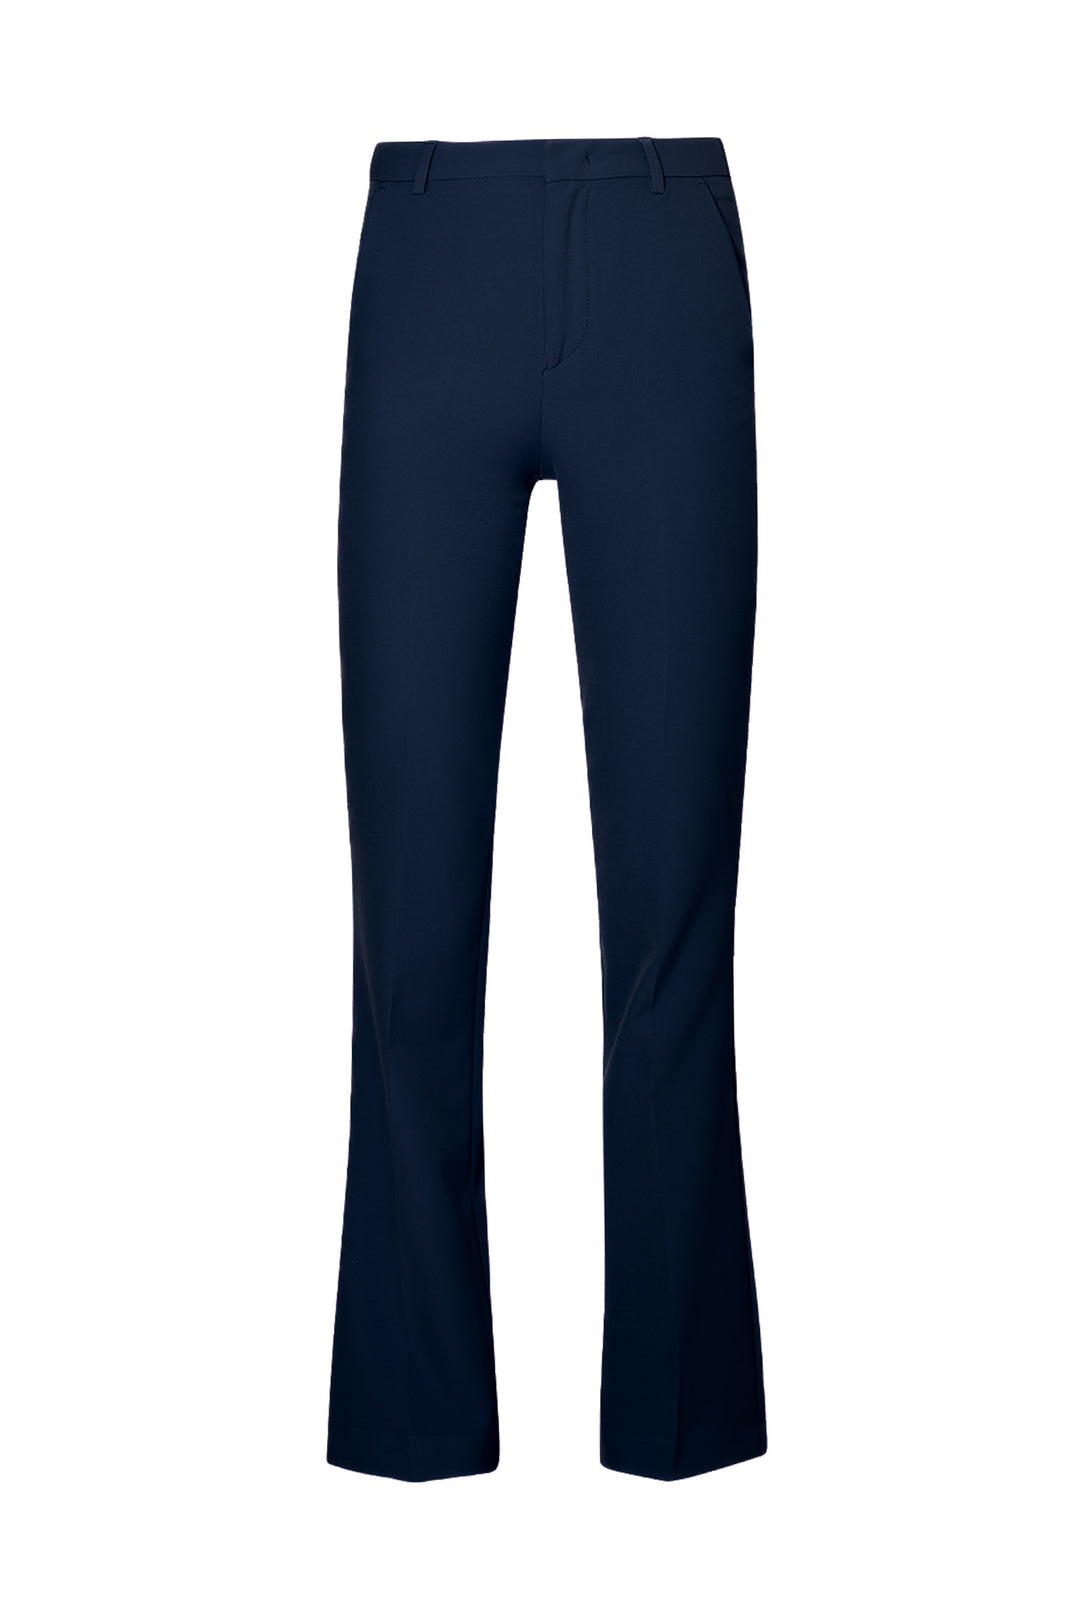 LIU JO Pantaloni blu navy da completo in tessuto stretch - Mancinelli 1954